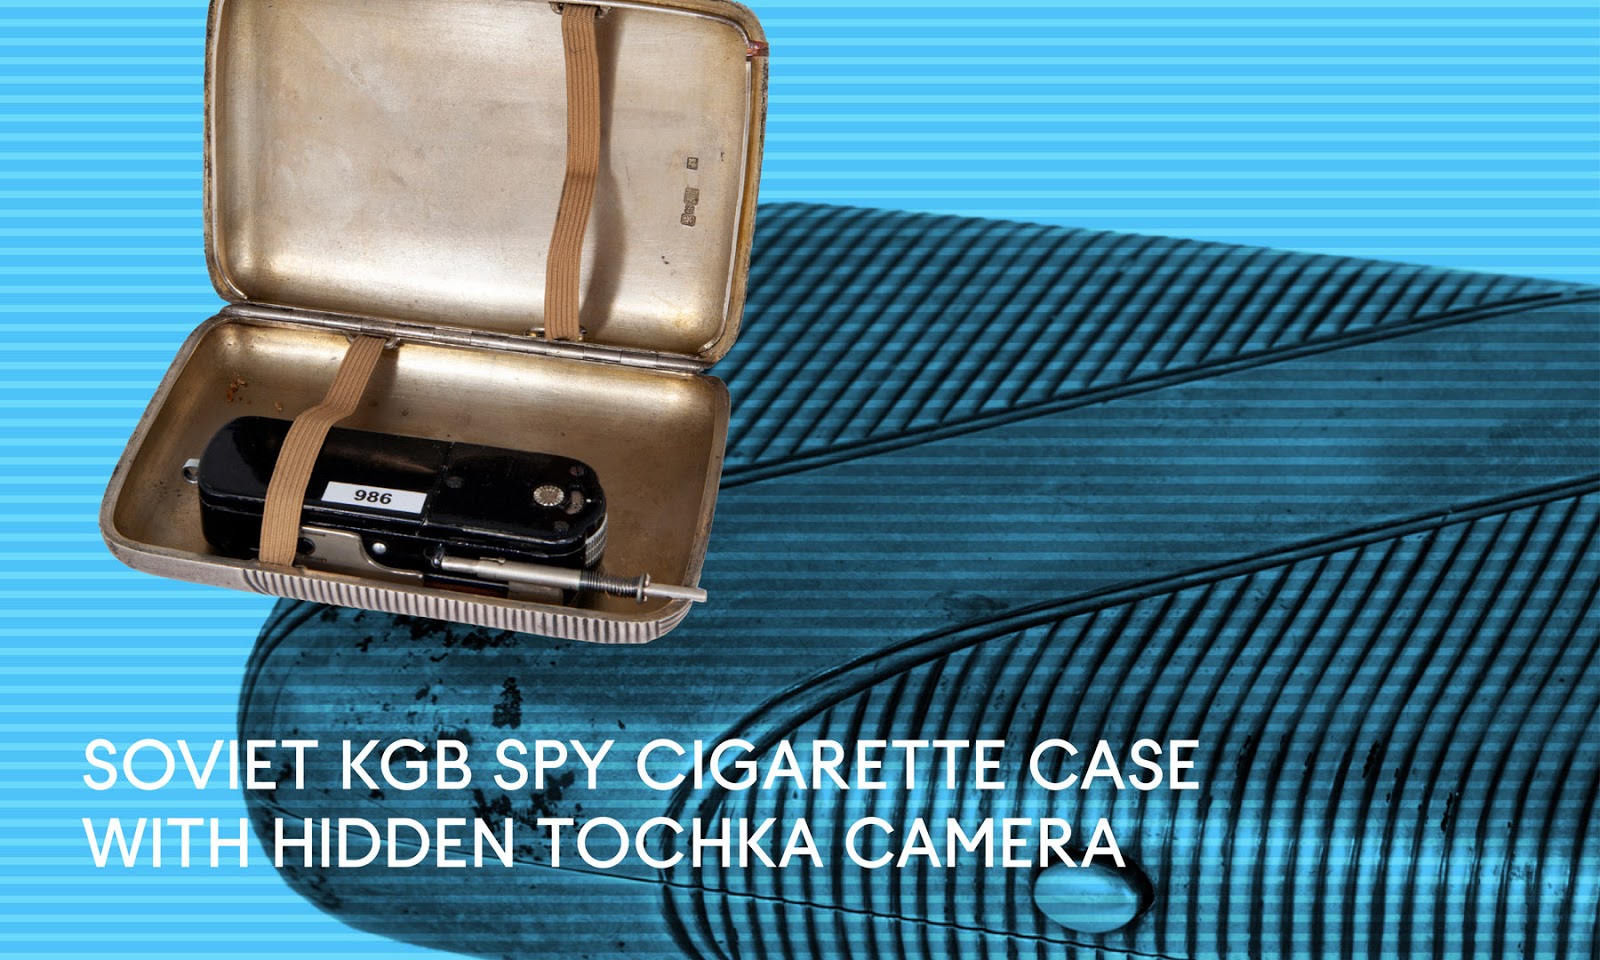 KGB Cigarette case camera